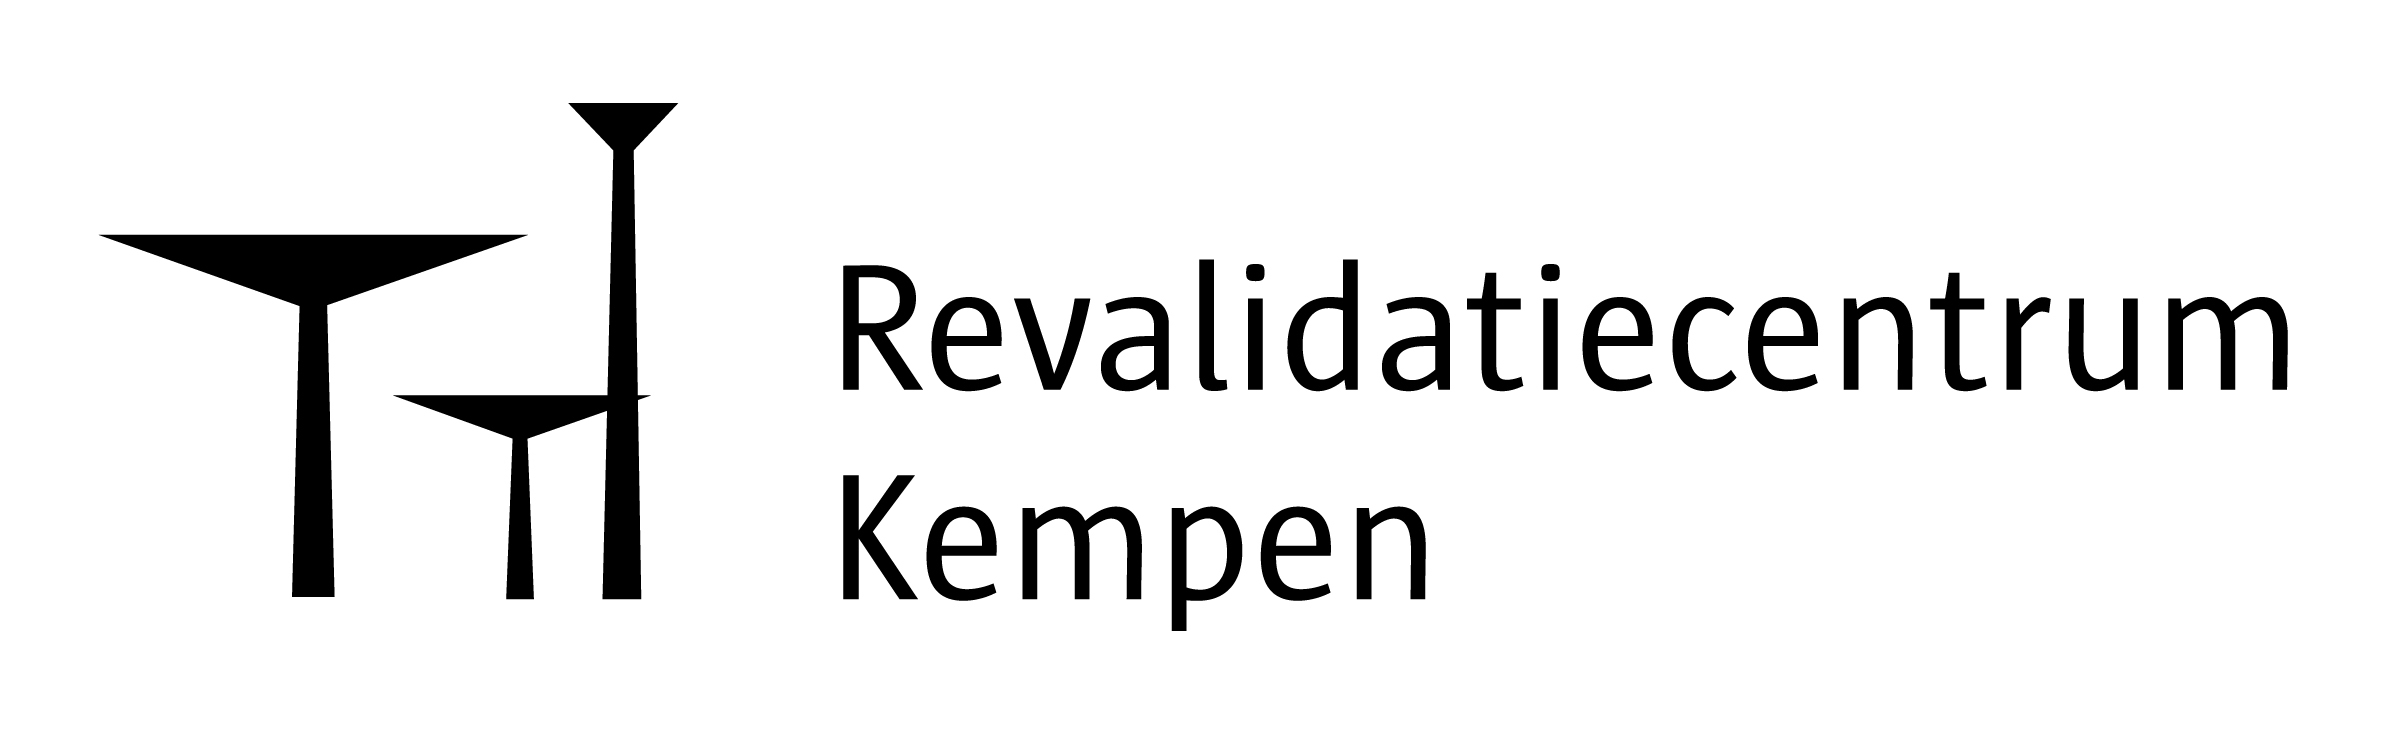 logo_revalidatie kempen_Tekengebied_zwart